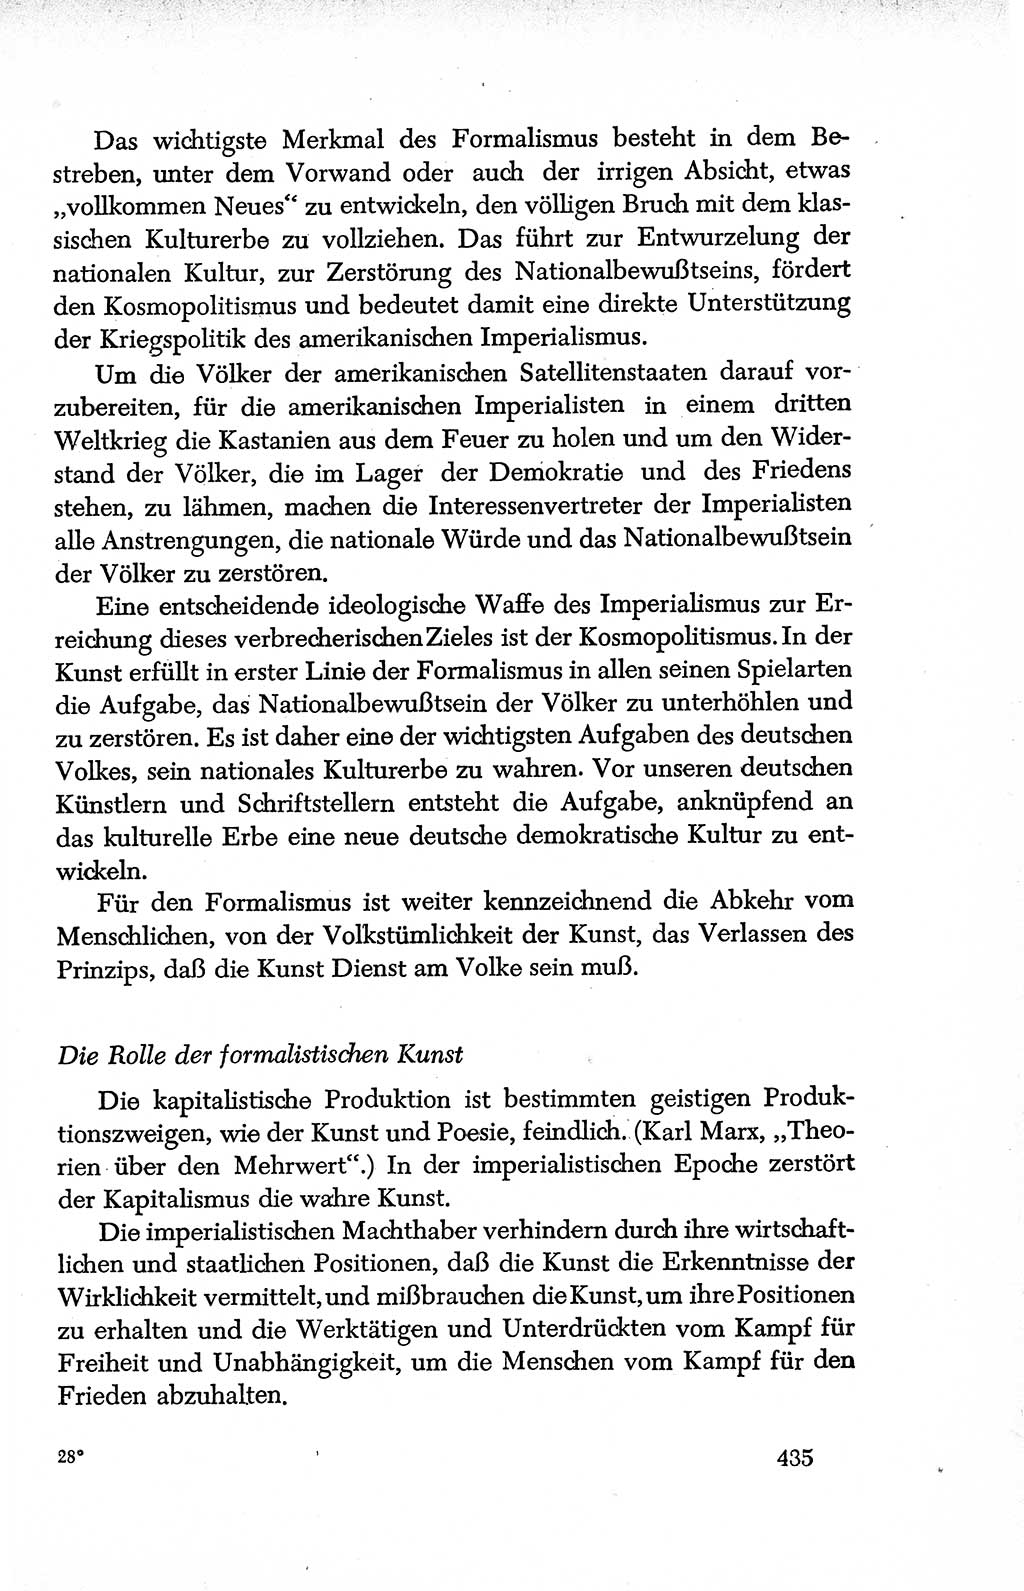 Dokumente der Sozialistischen Einheitspartei Deutschlands (SED) [Deutsche Demokratische Republik (DDR)] 1950-1952, Seite 435 (Dok. SED DDR 1950-1952, S. 435)